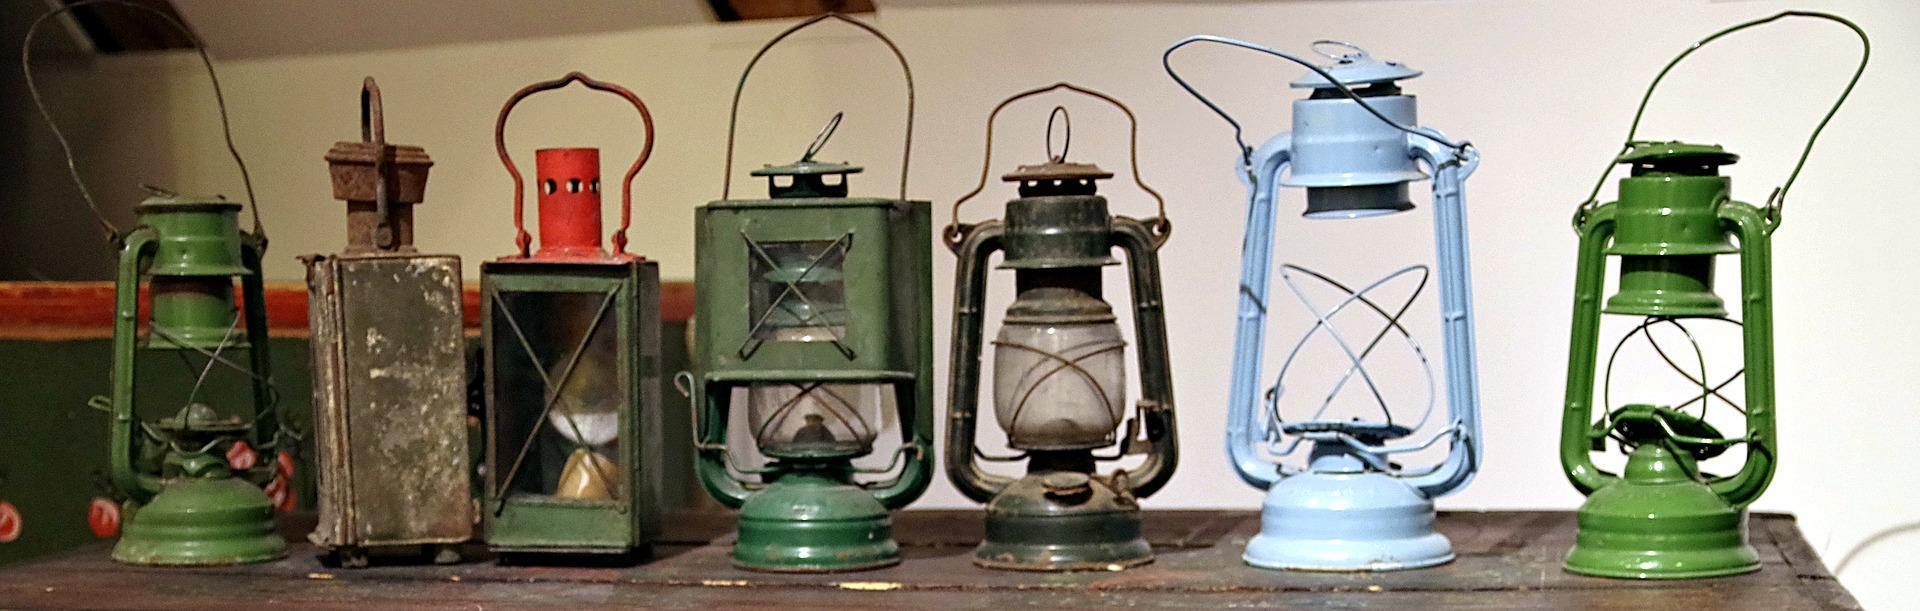 Old mining lanterns.